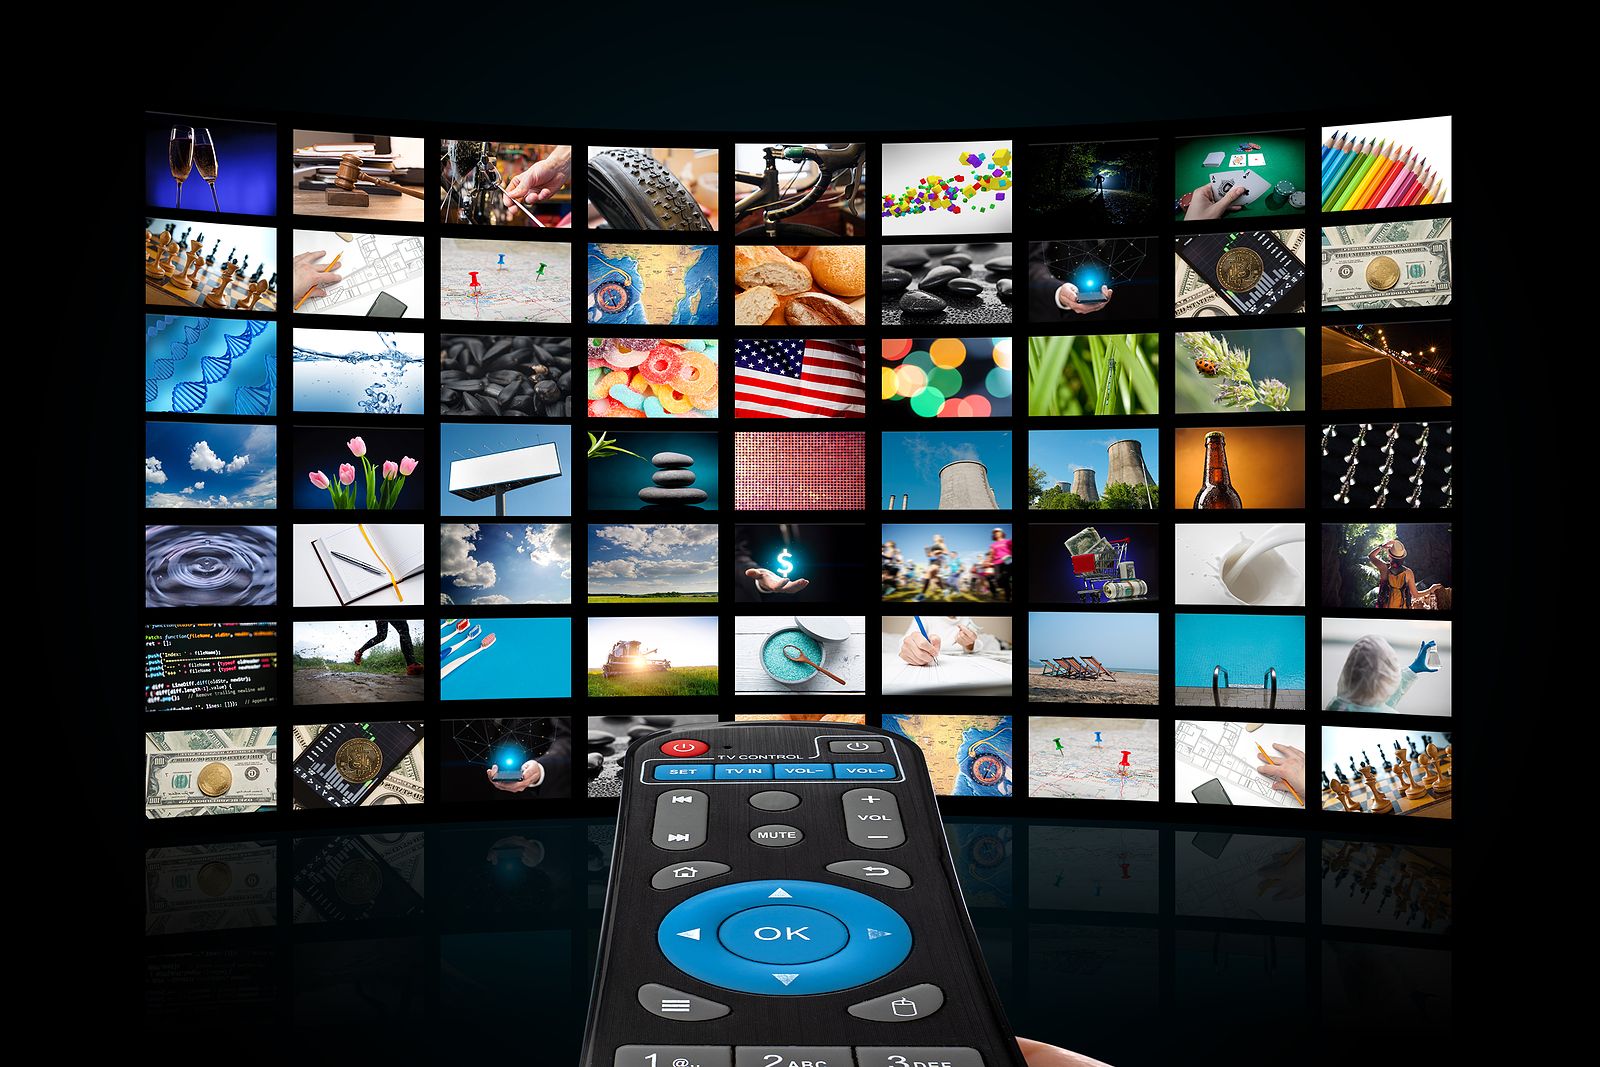 Cómo convertir tu televisión en un Smart TV? 